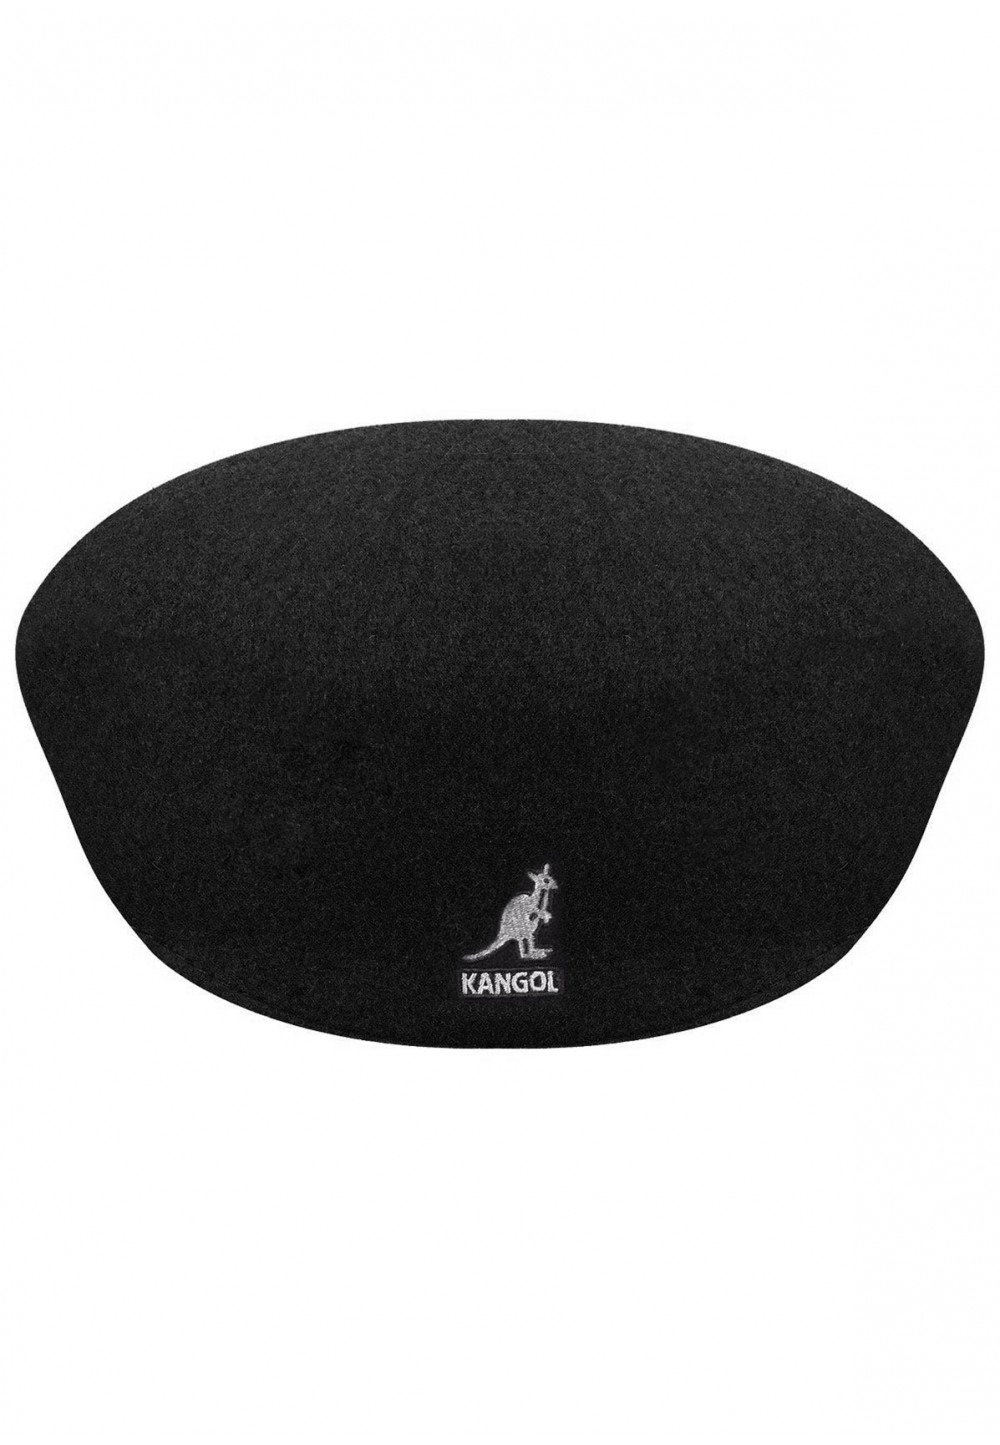  Кепка Kangol Wool 504 у чорному кольорі